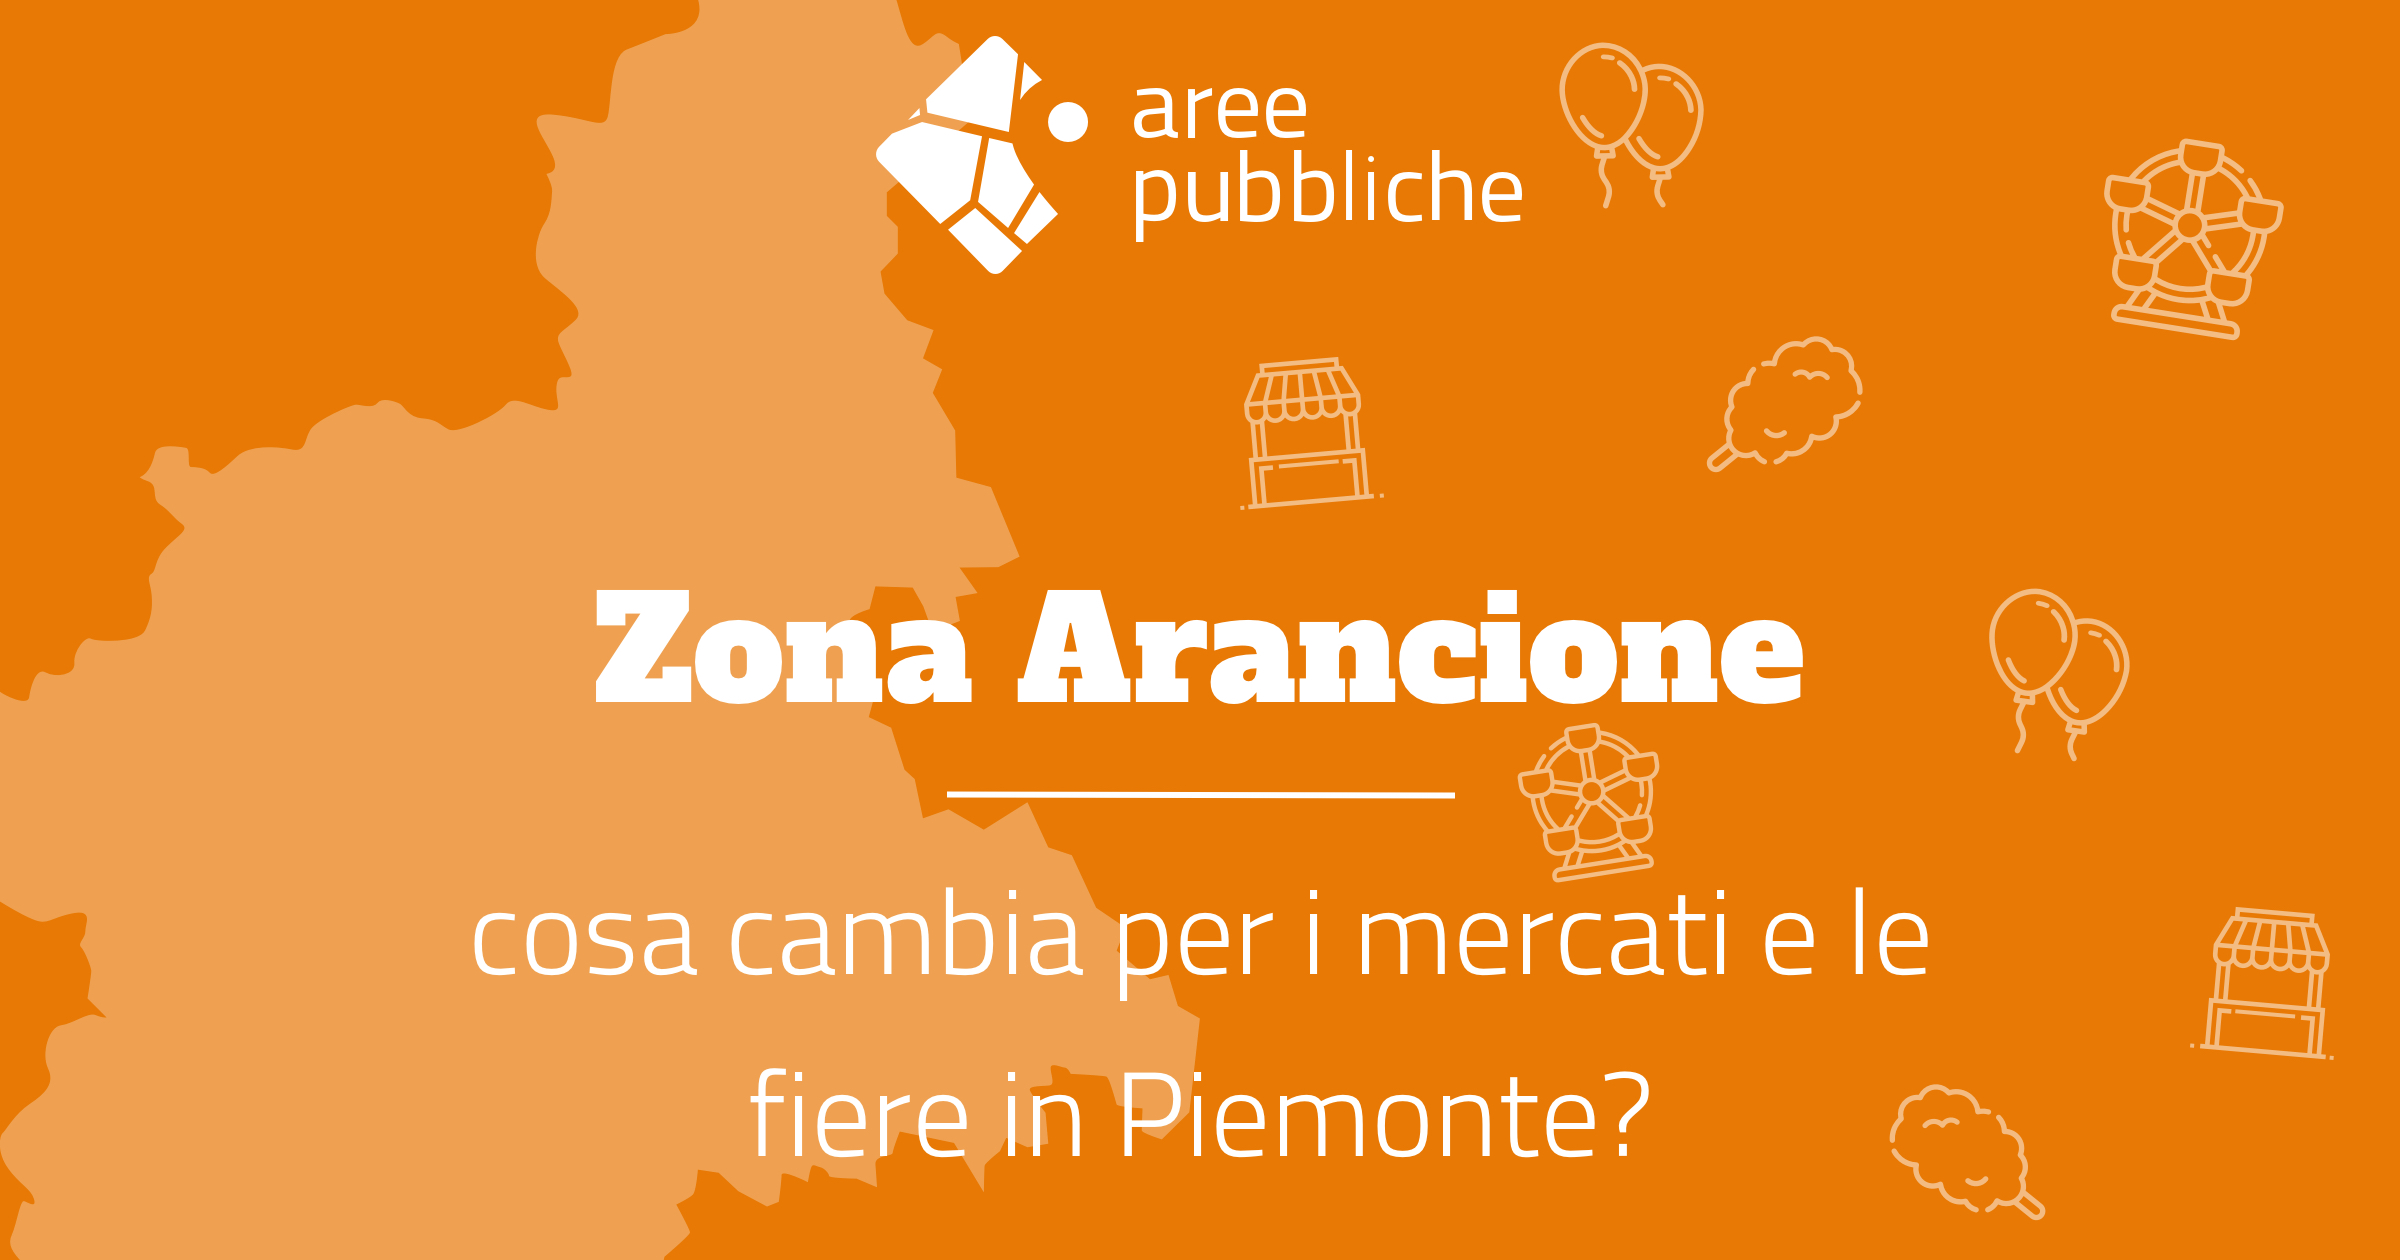 Fiere in Piemonte e mercati in zona arancione 